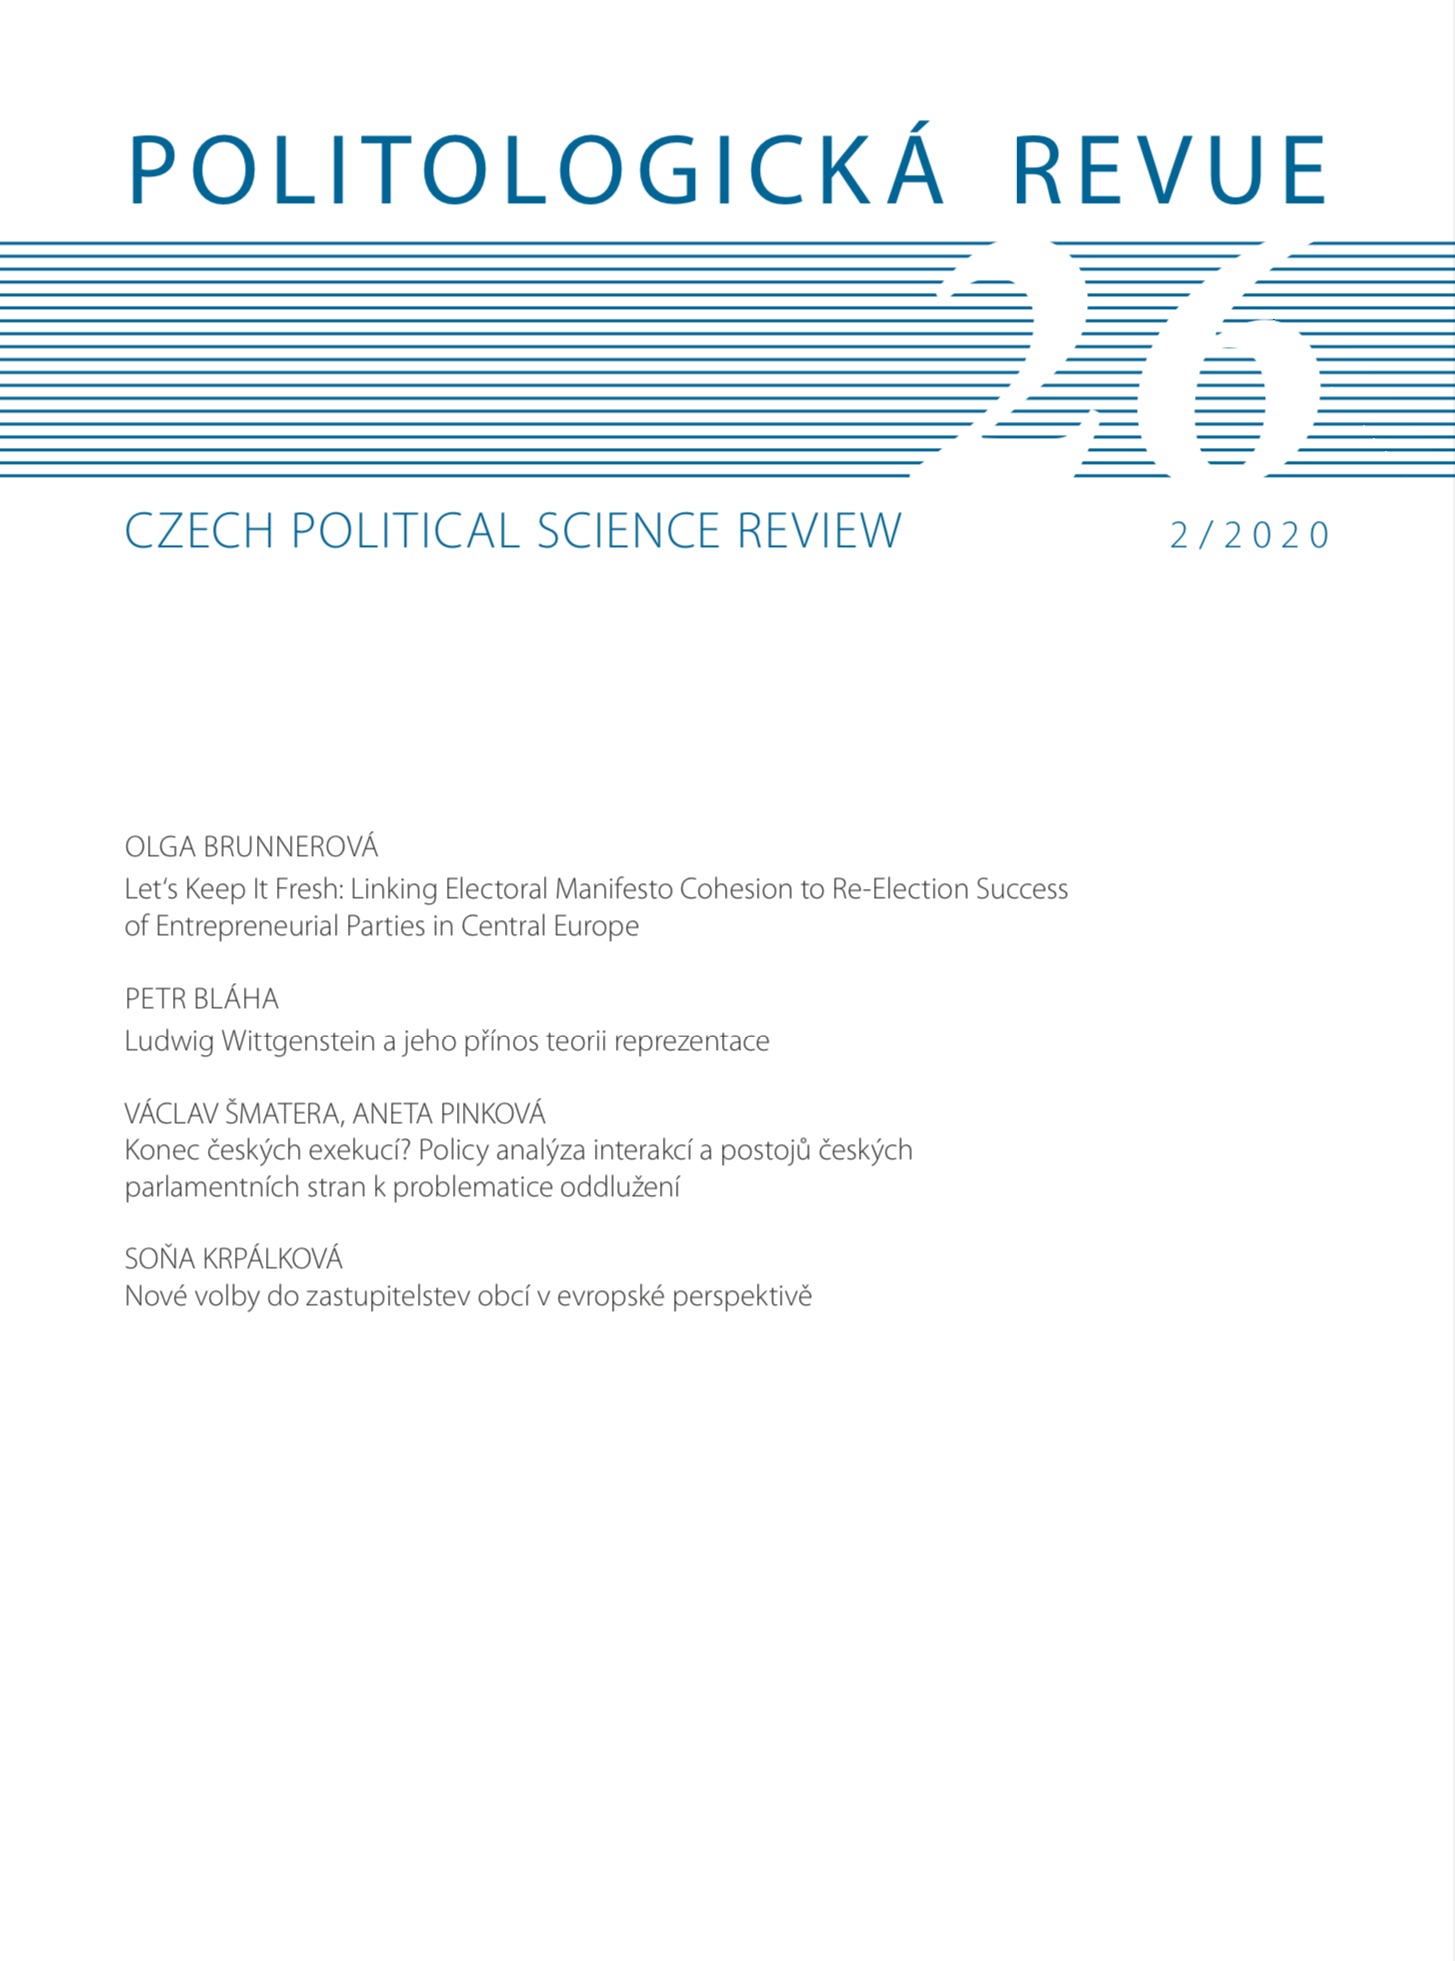 Konec českých exekucí? Policy analýza interakcí a postojů českých parlamentních stran k problematice oddlužení